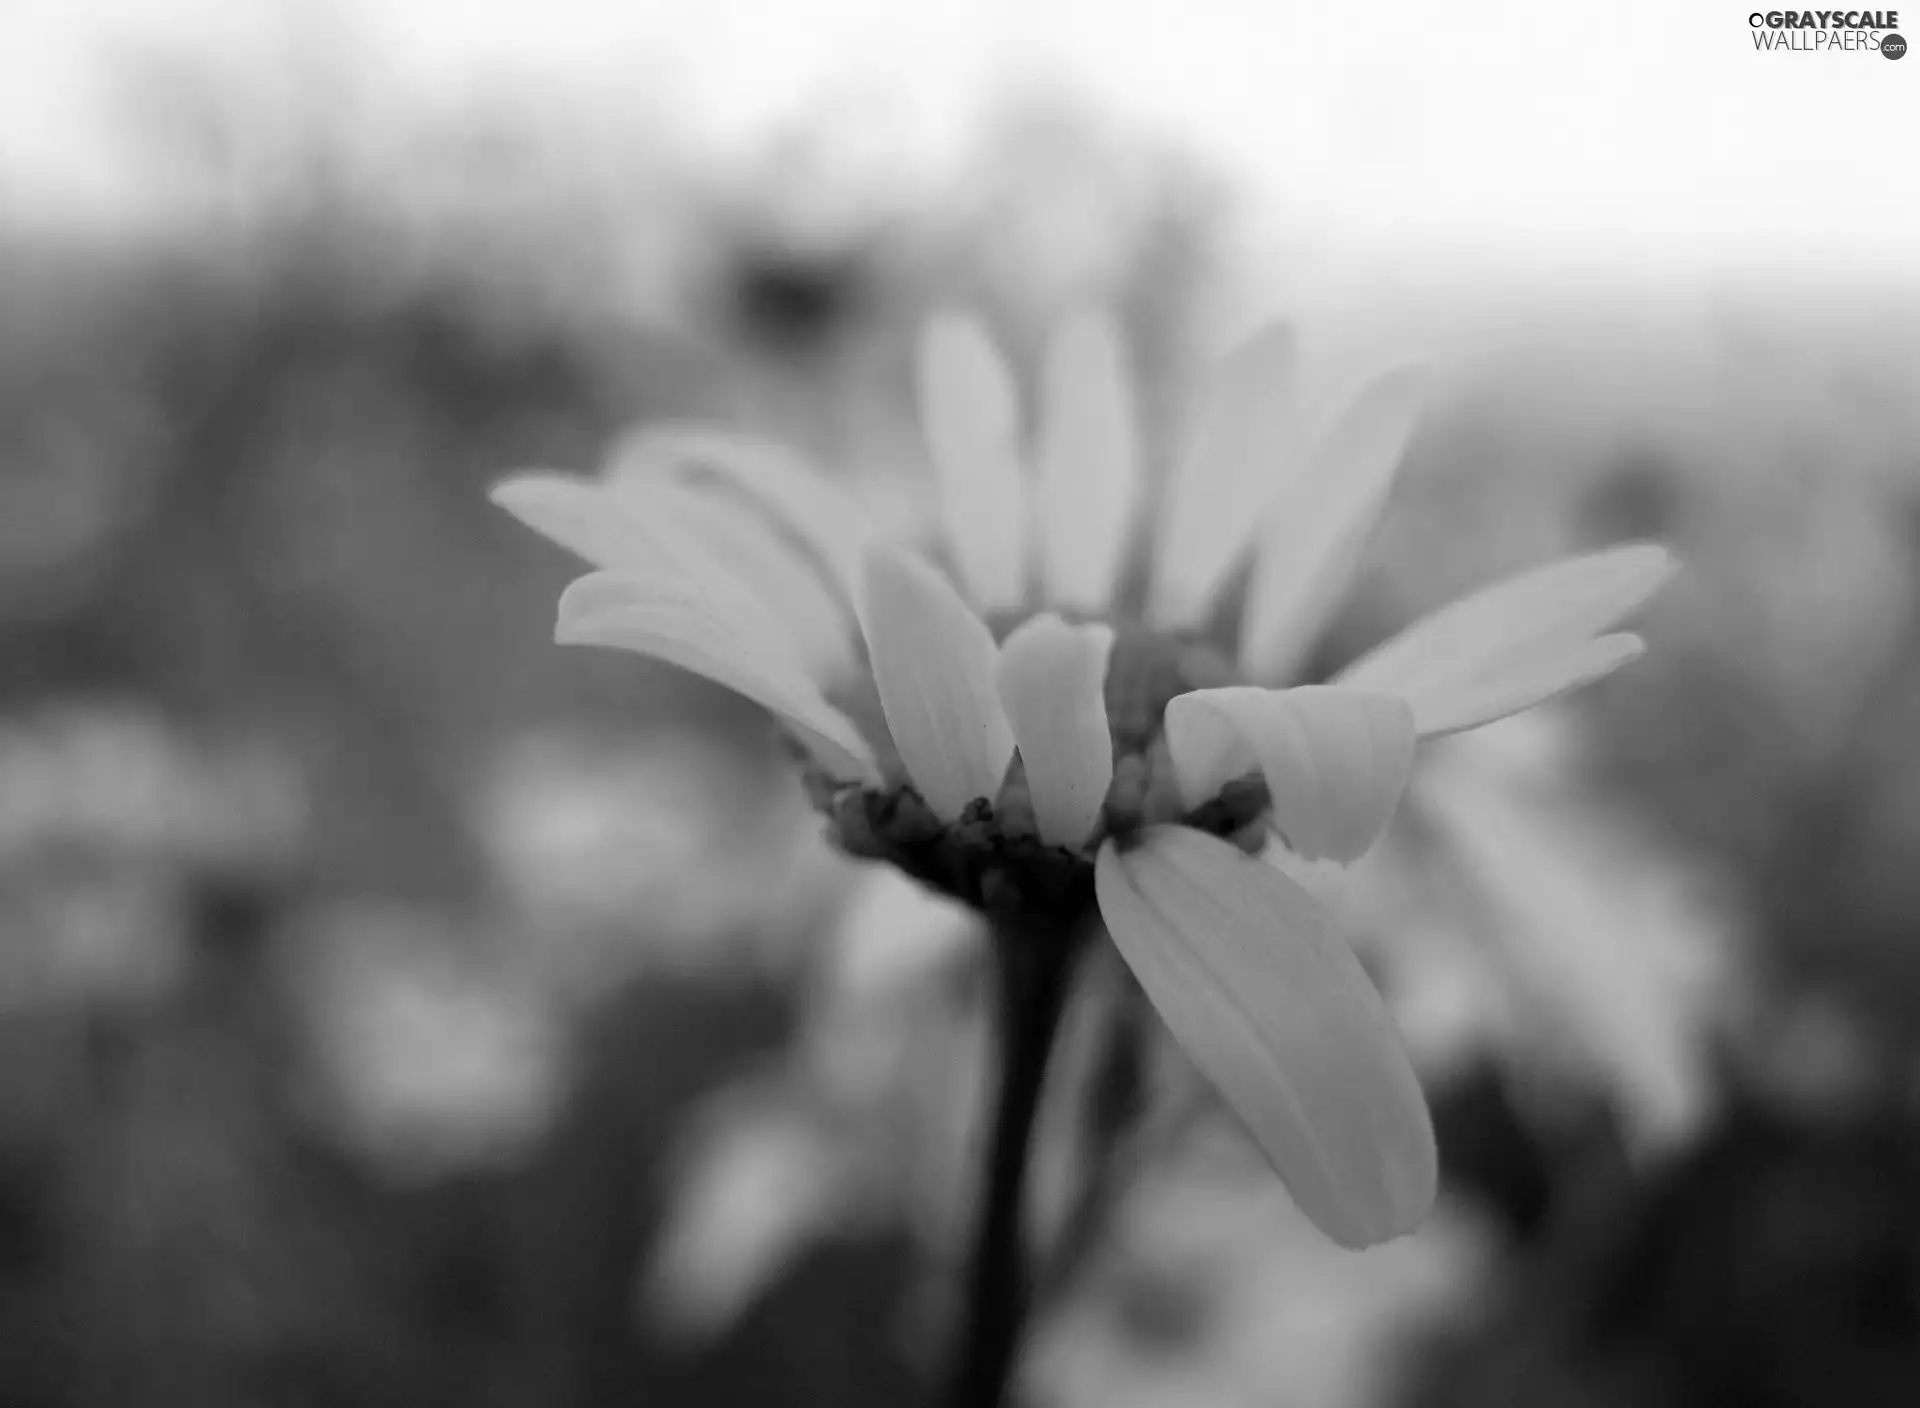 White, daisy